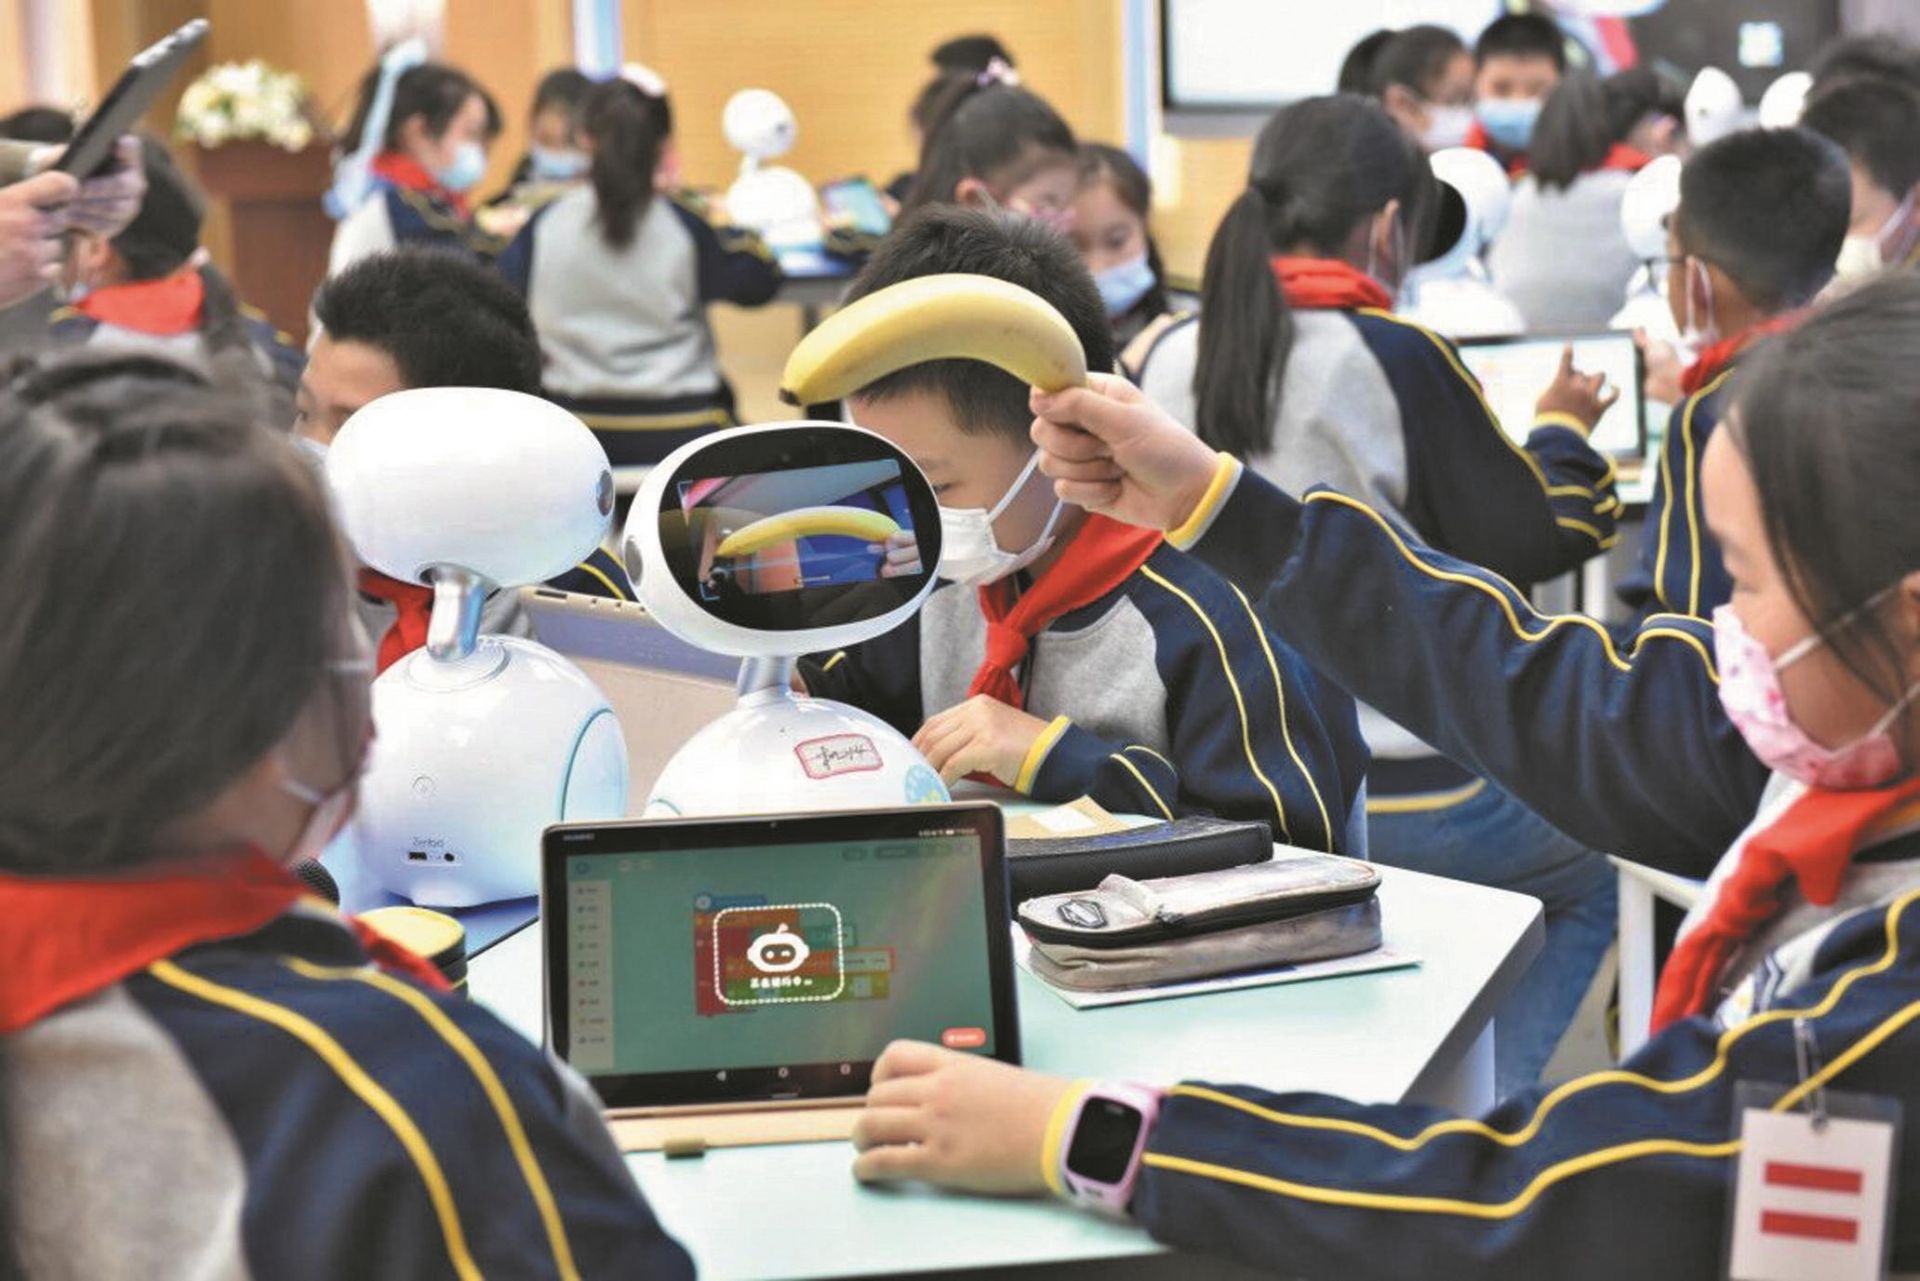 武汉中小学兴起人工智能课 学生接受程度超过预期”